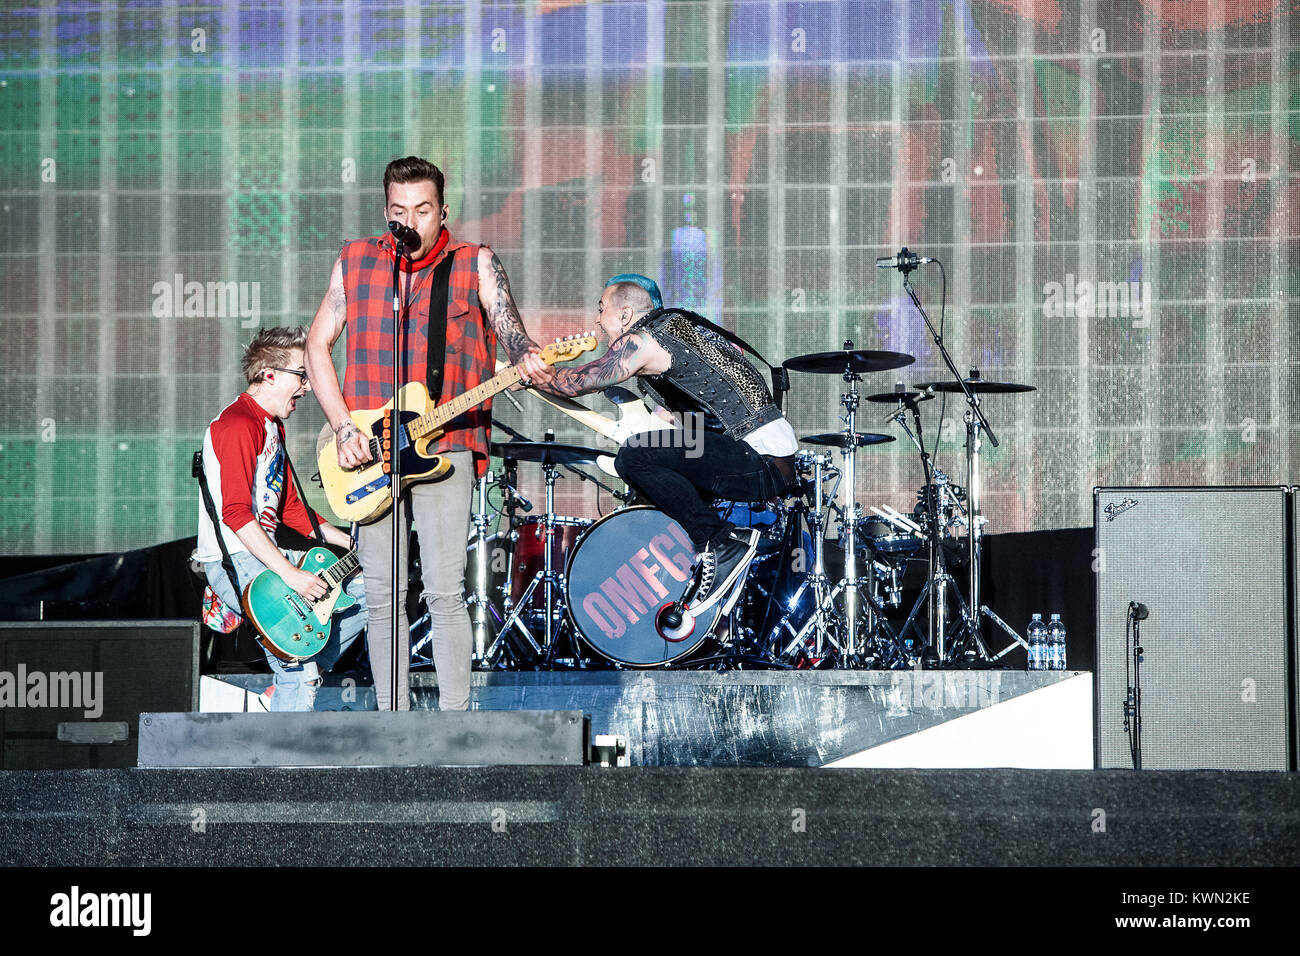 Die Englische pop rock Super-Gruppe McBusted führt ein Live Konzert auf der großen Bühne an der Barclaycard britischen Sommer Festival 2014 am Hyde Park, London. Hier Gitarrist Danny Jones wird dargestellt, live auf der Bühne. De 06.07.2014. Stockfoto